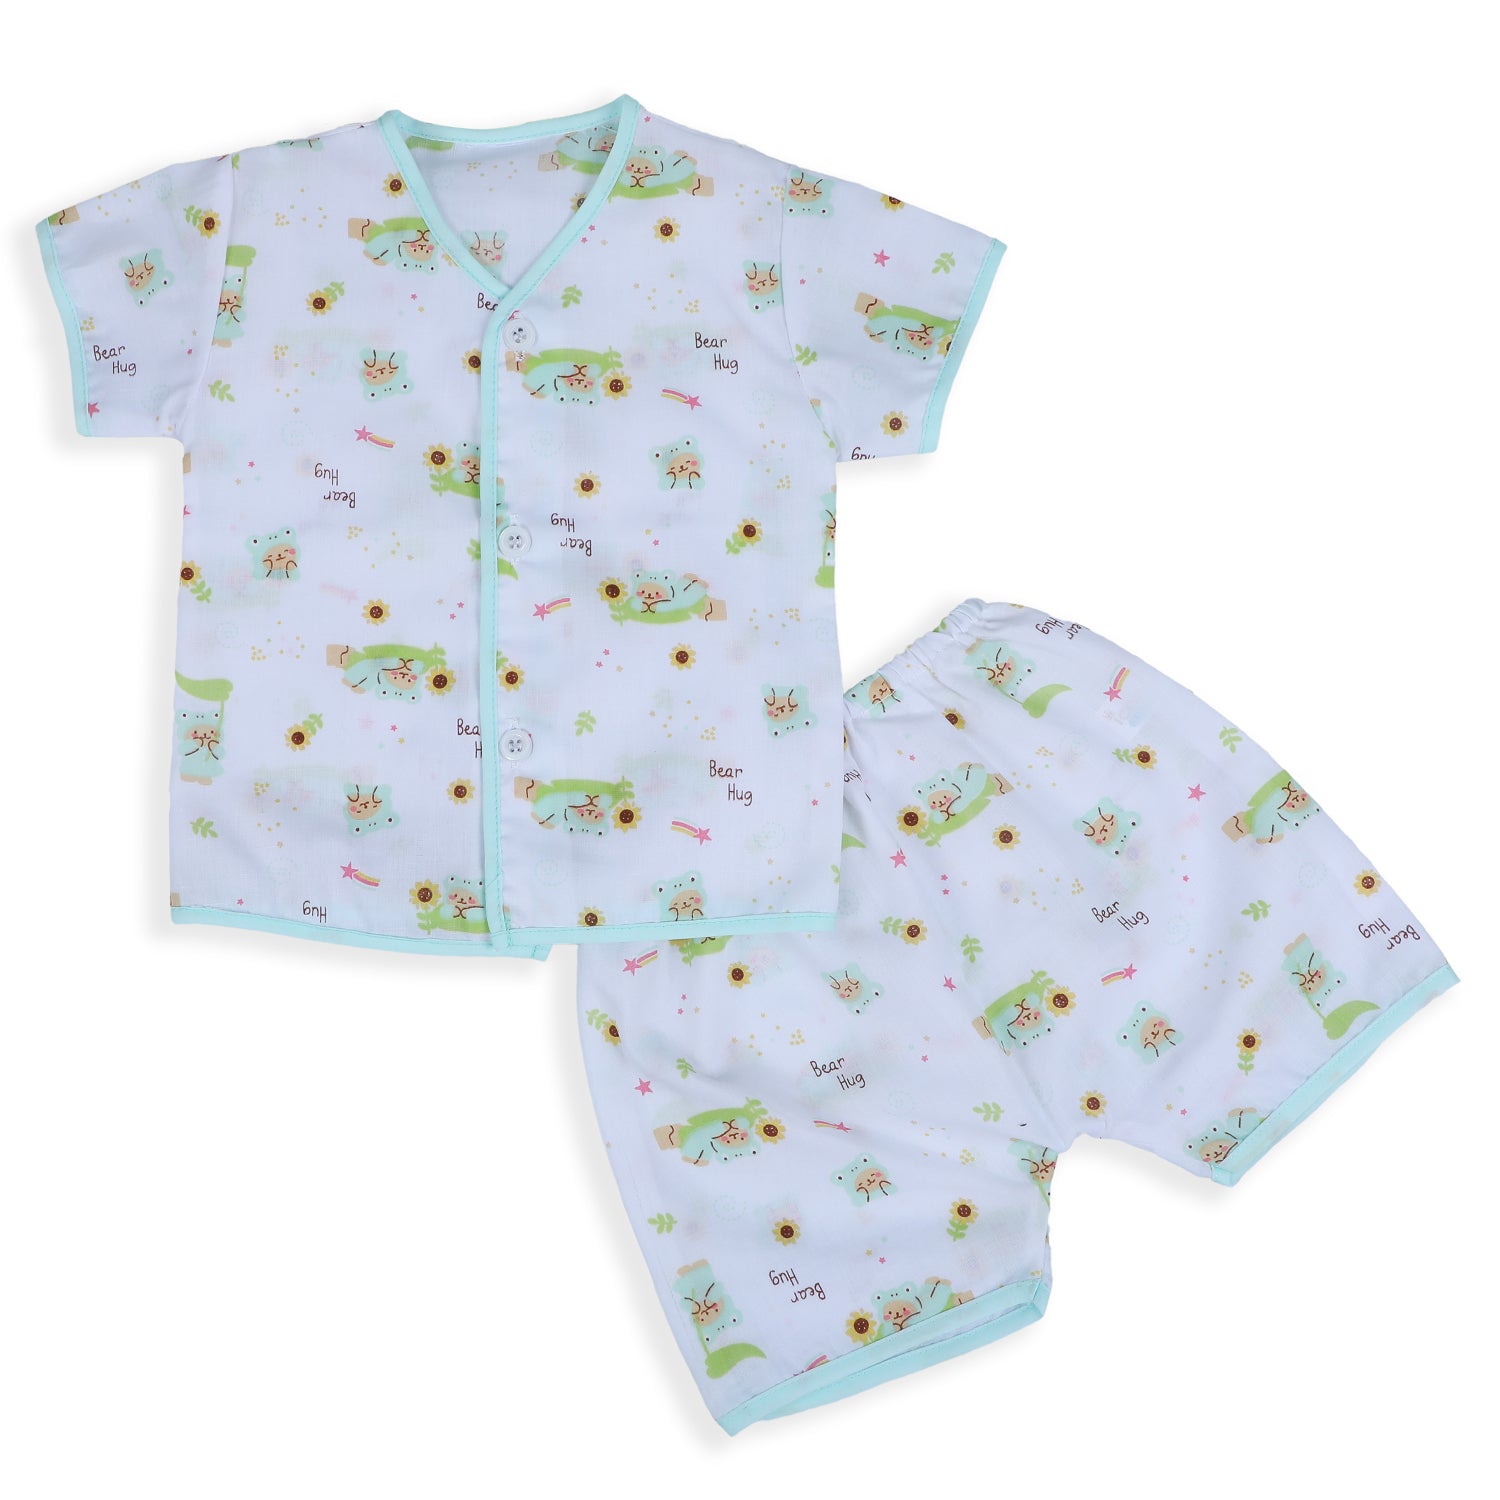 Baby Moo Bear Hug Half Sleeves Soft Cotton Jhabla And Shorts 2pcs Set - Green